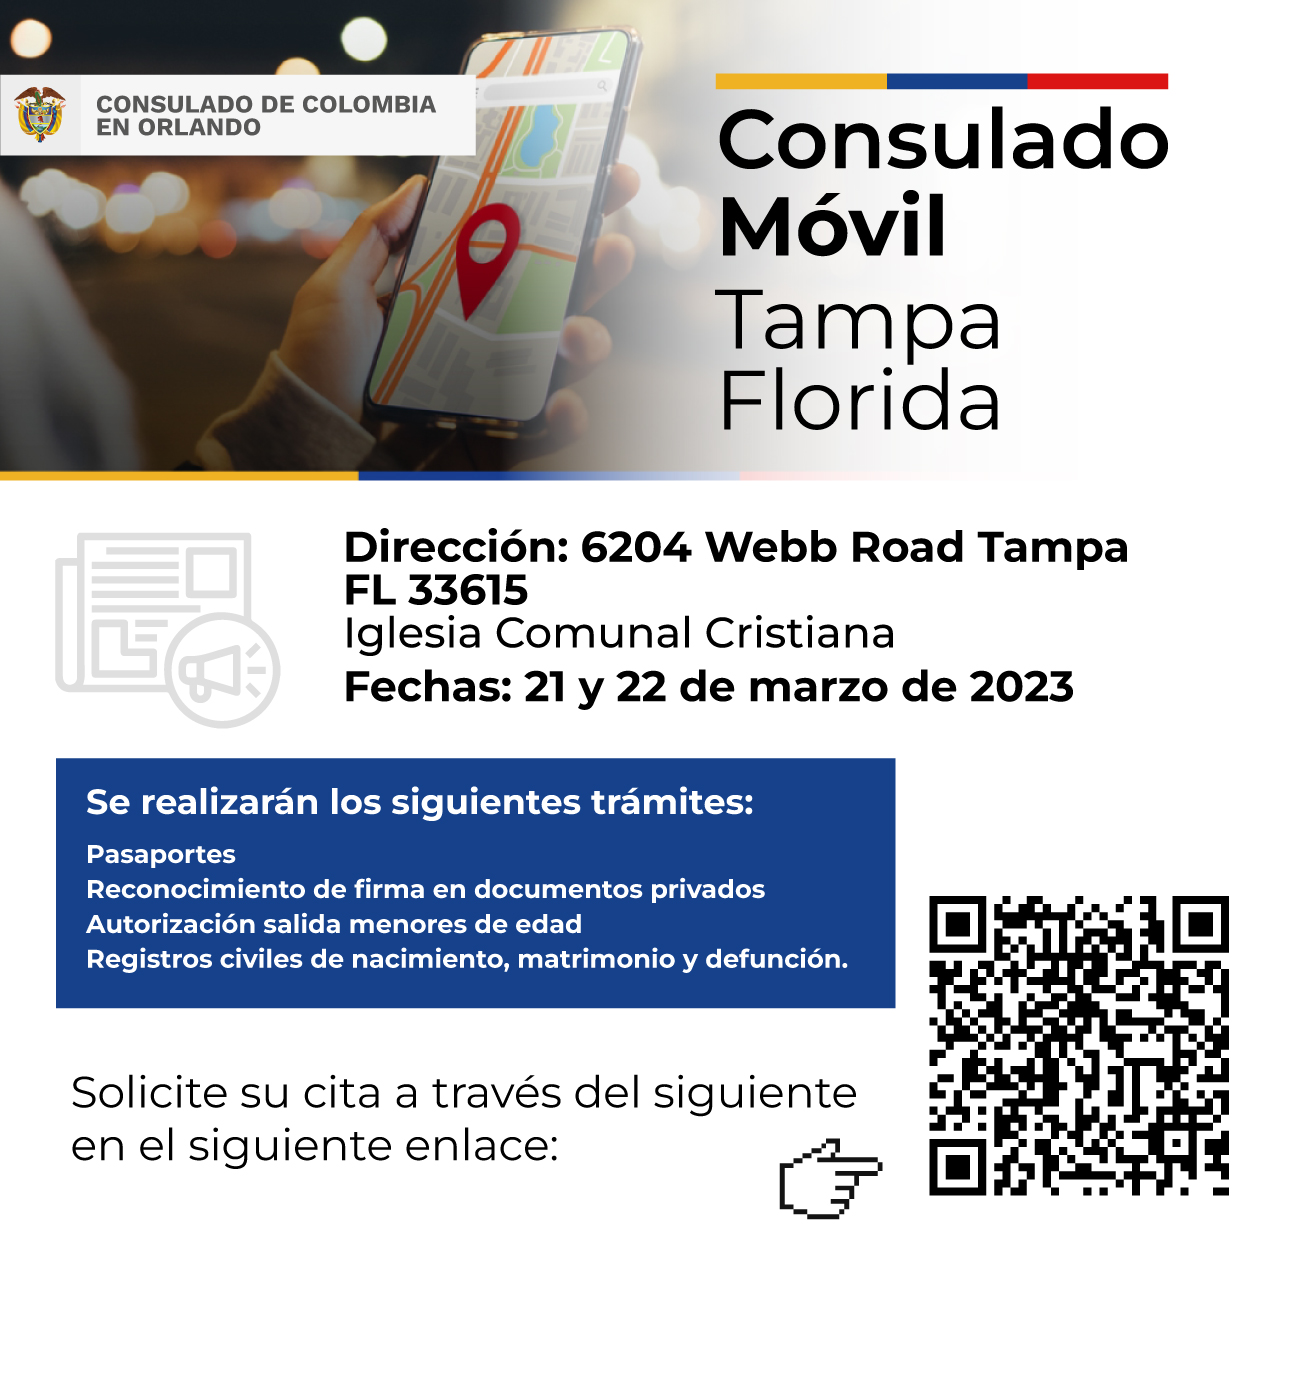 El Consulado Móvil en Tampa se realizará el 21 y 22 de marzo de 2023